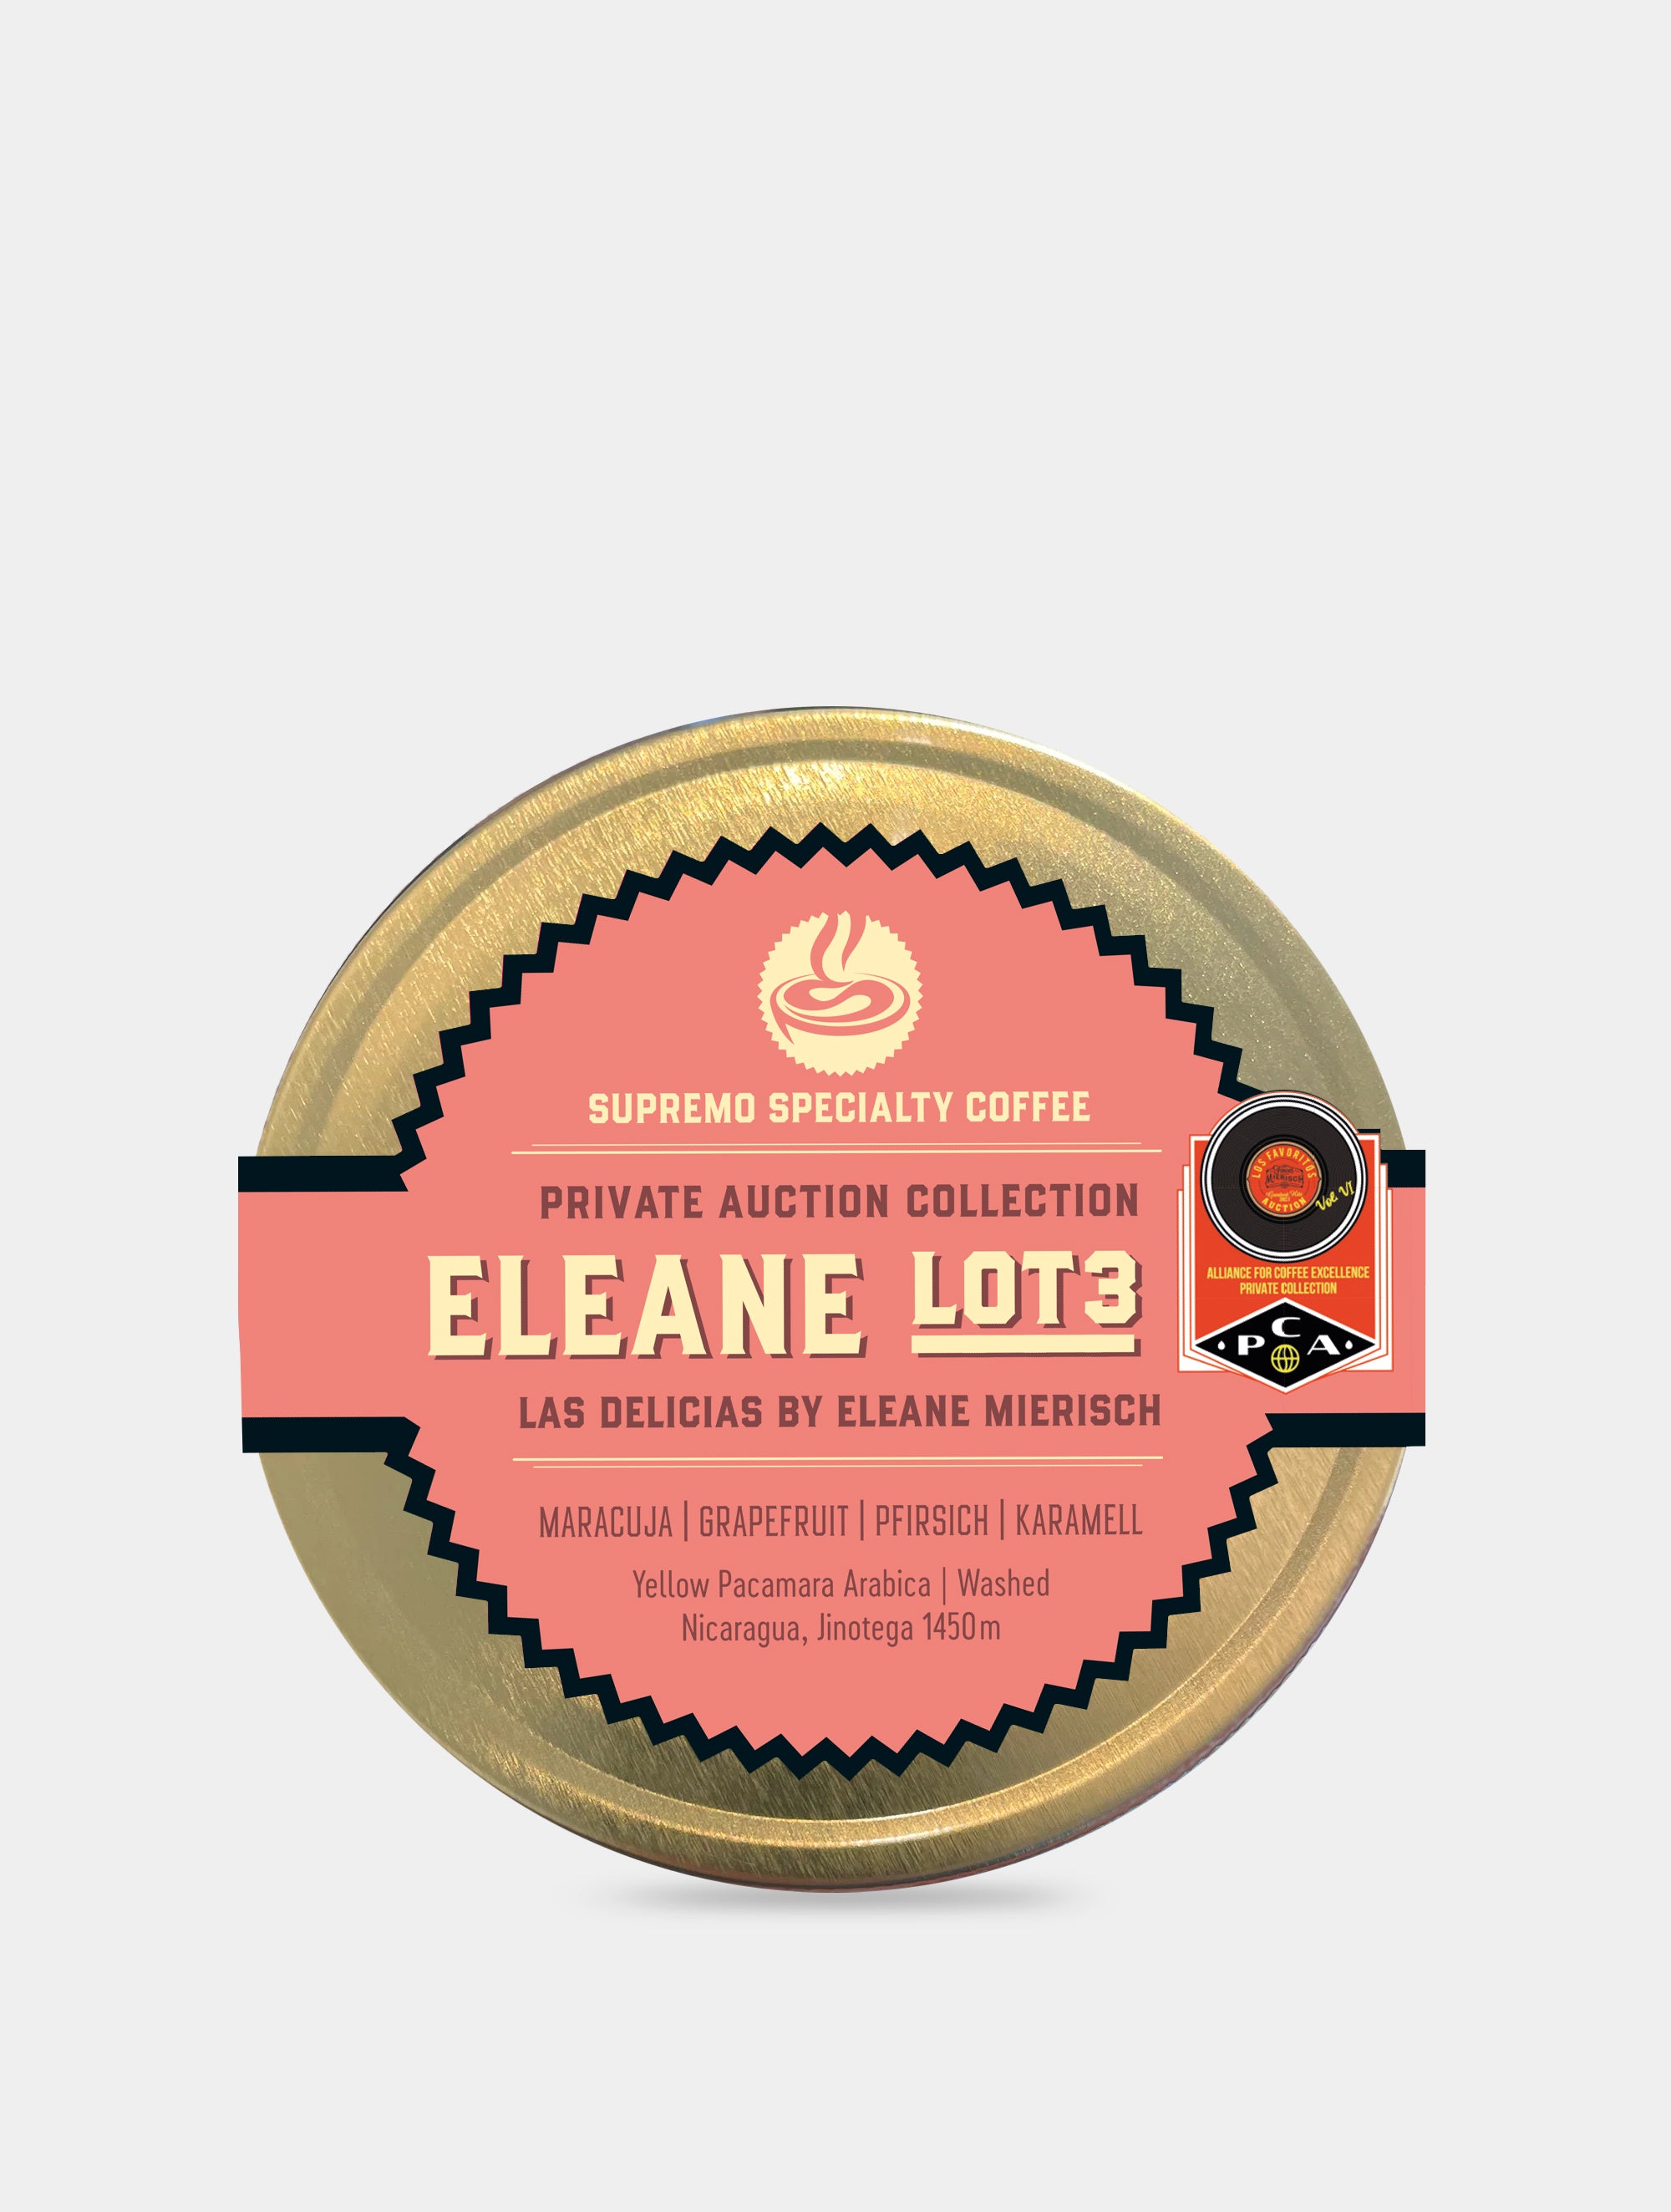 Eleane Lot #3